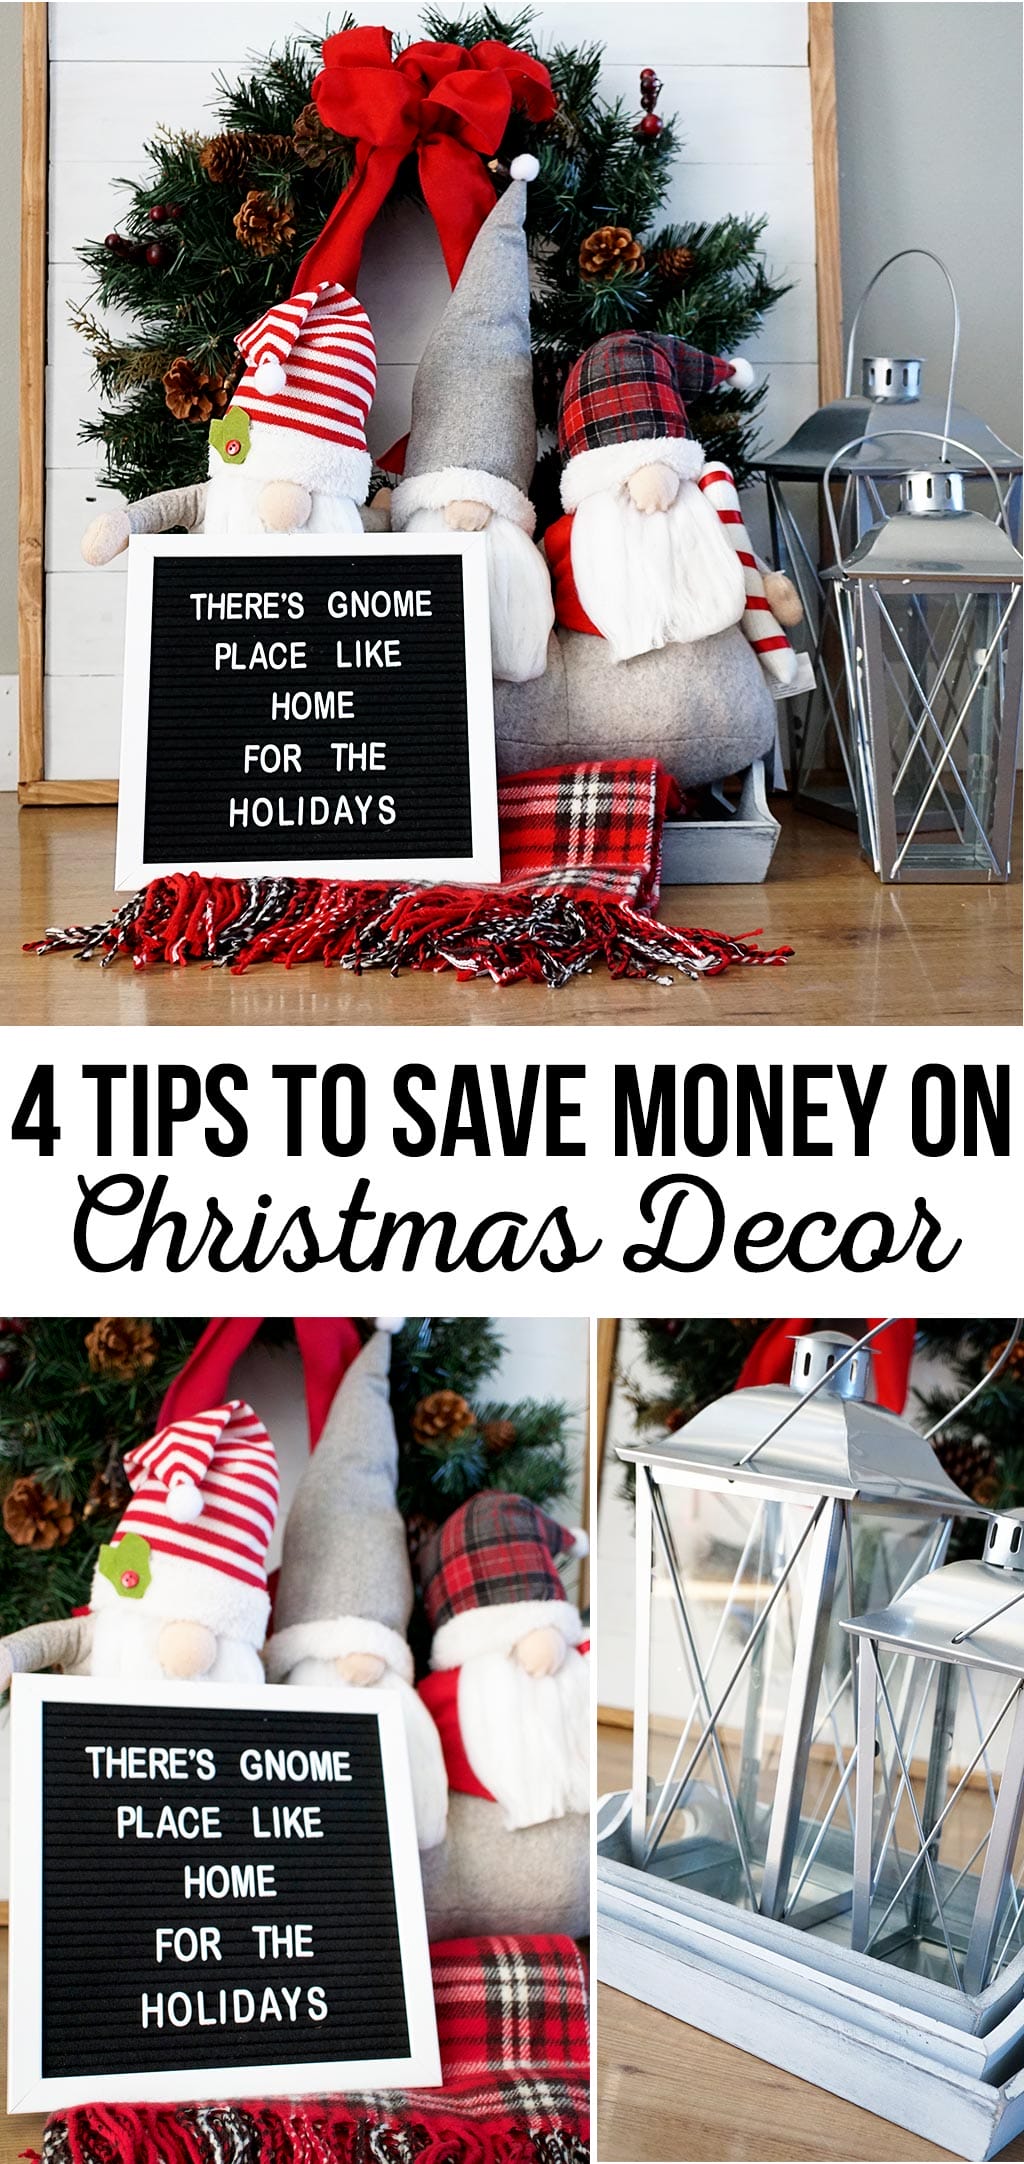 4 Tips to Save Money on Christmas Decor